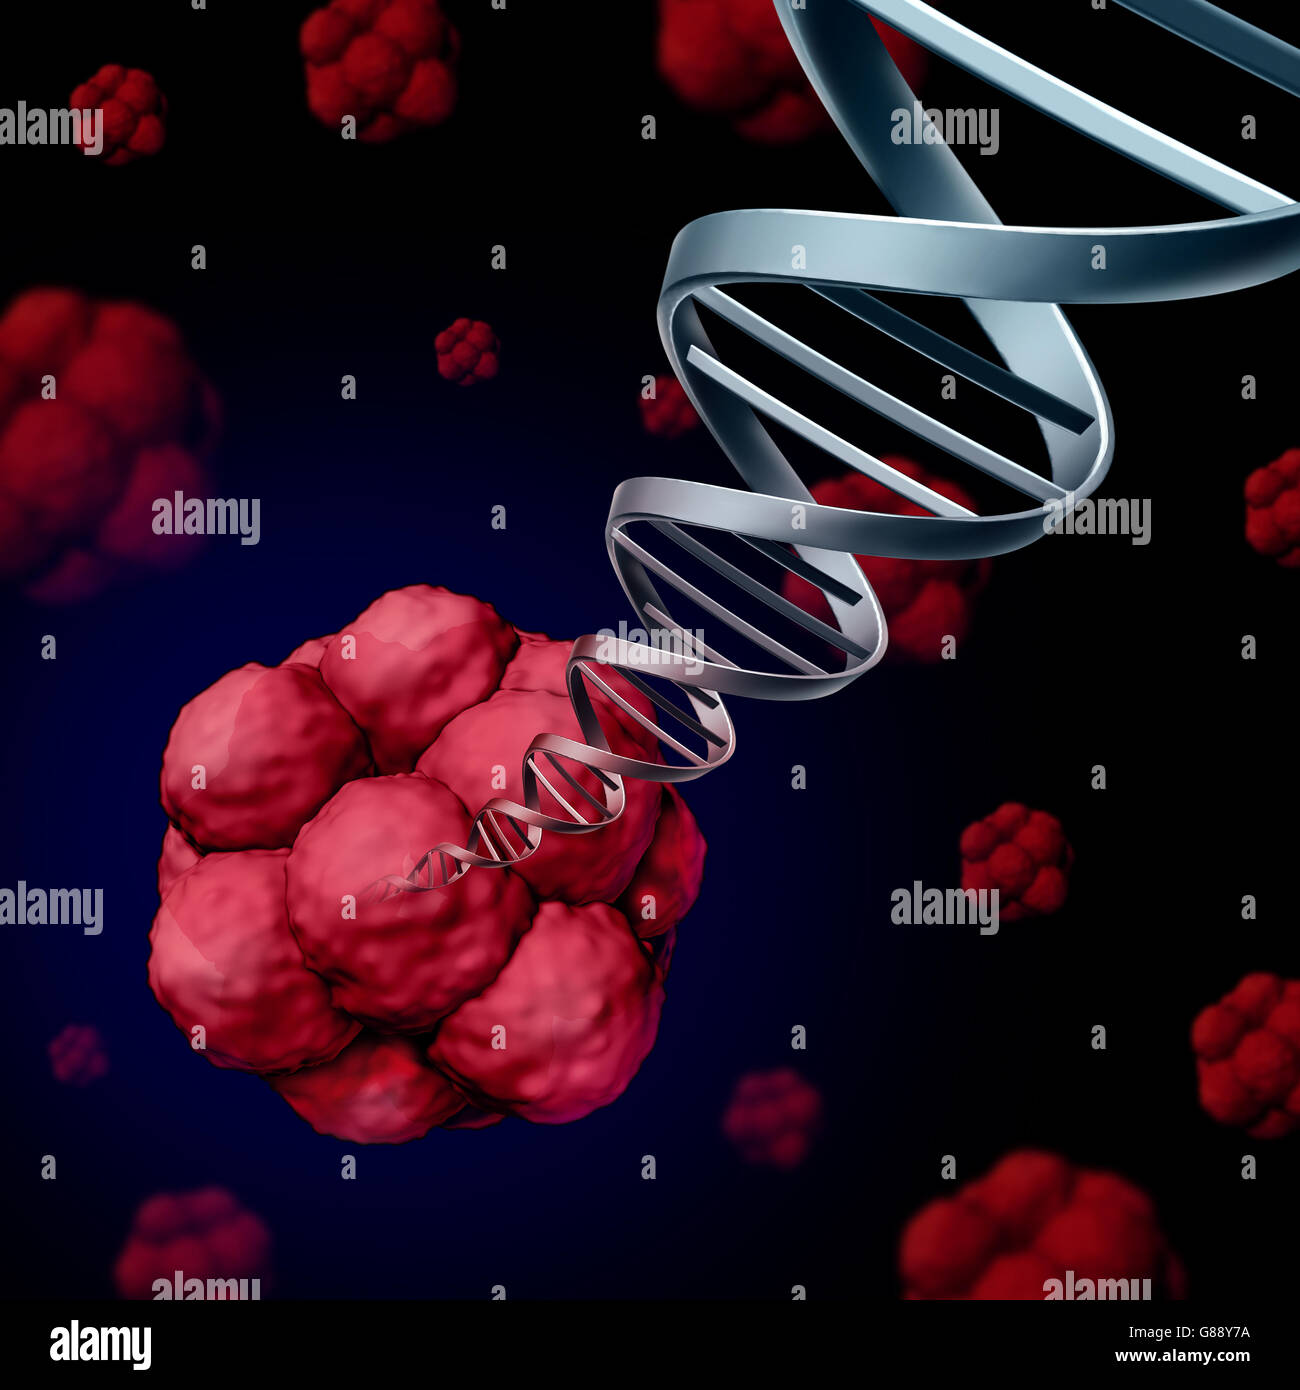 El ADN de células madre o stemcell genética concepto como una ilustración tridimensional de células biológicas que dividen a través de la mitosis se encuentra en los seres humanos con una hélice doble hebra con cromosomas emergiendo como una ciencia médica de investigación sanitaria como un símbolo 3D Foto de stock